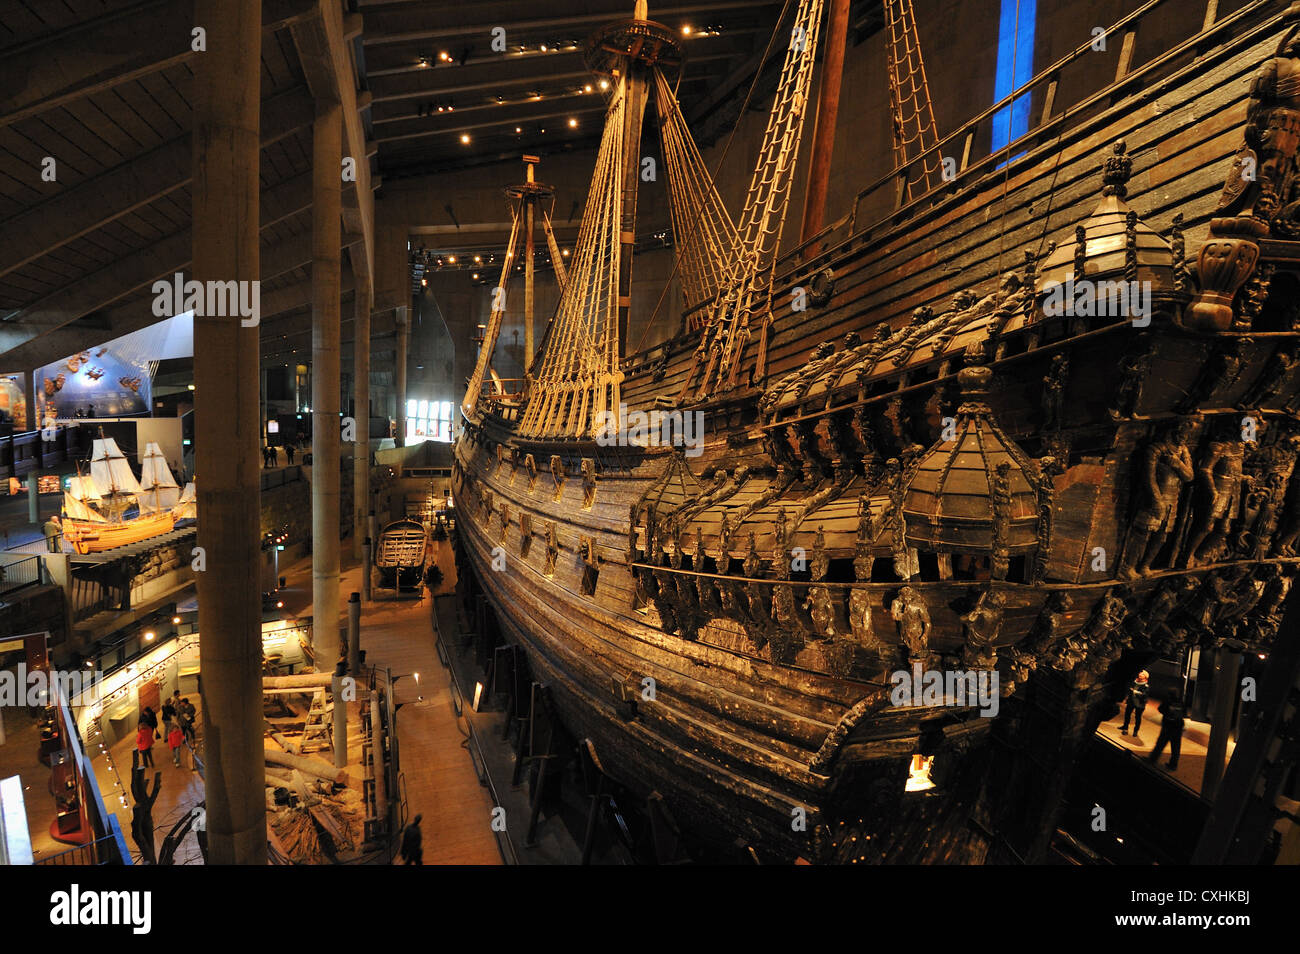 Visualizza il modello e la originale di conserve di nave da guerra Vasa presso il Vasa Museum di Stoccolma Djurgarden, Stockholms Lan, Svezia Foto Stock